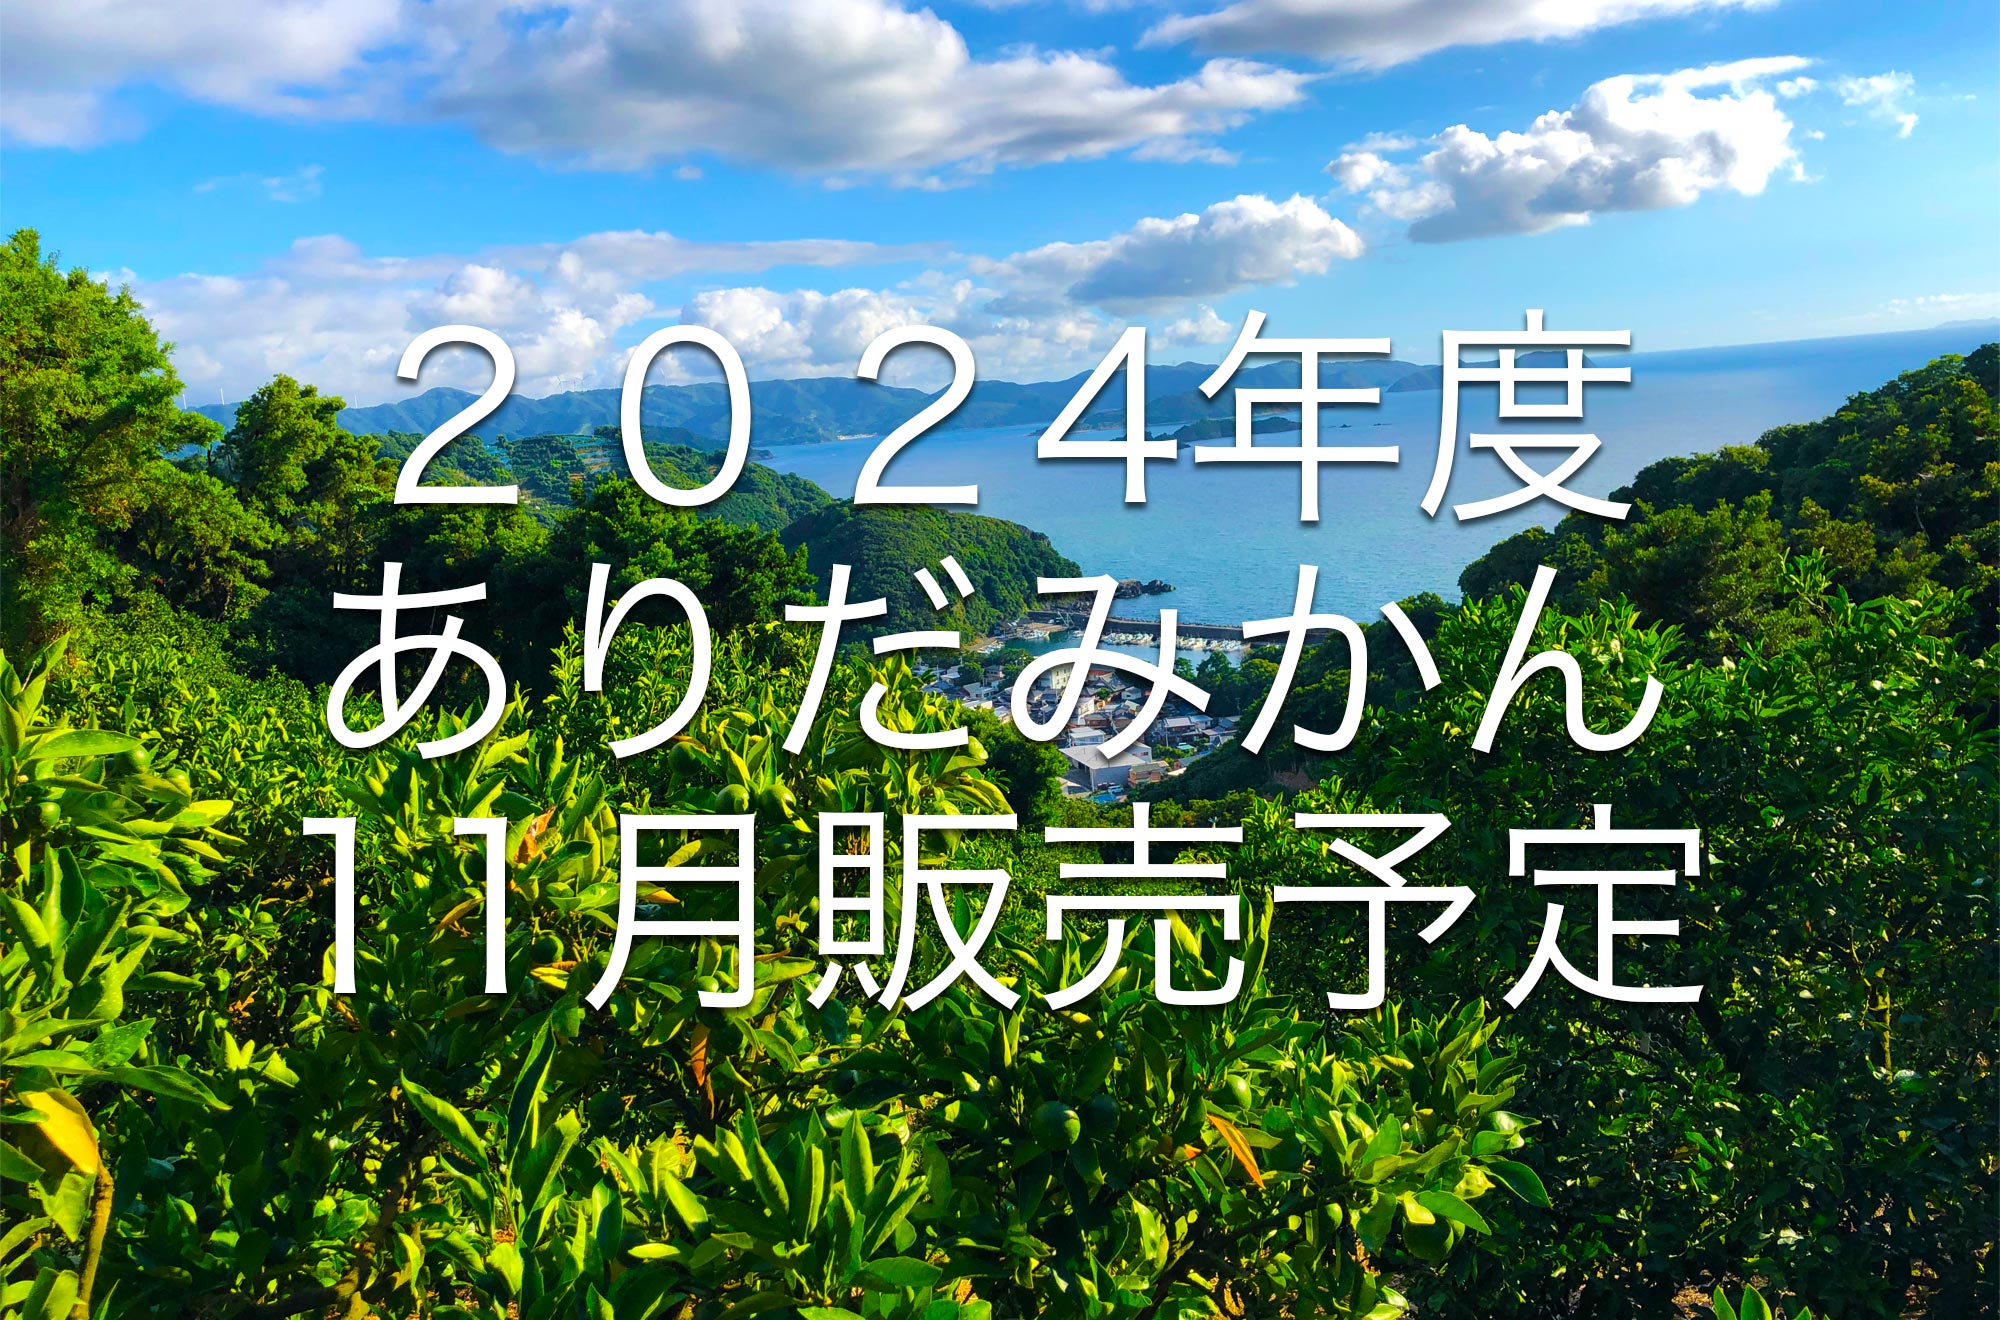 2022年度 ご家庭用、和歌山・有田みかん。販売予定!!